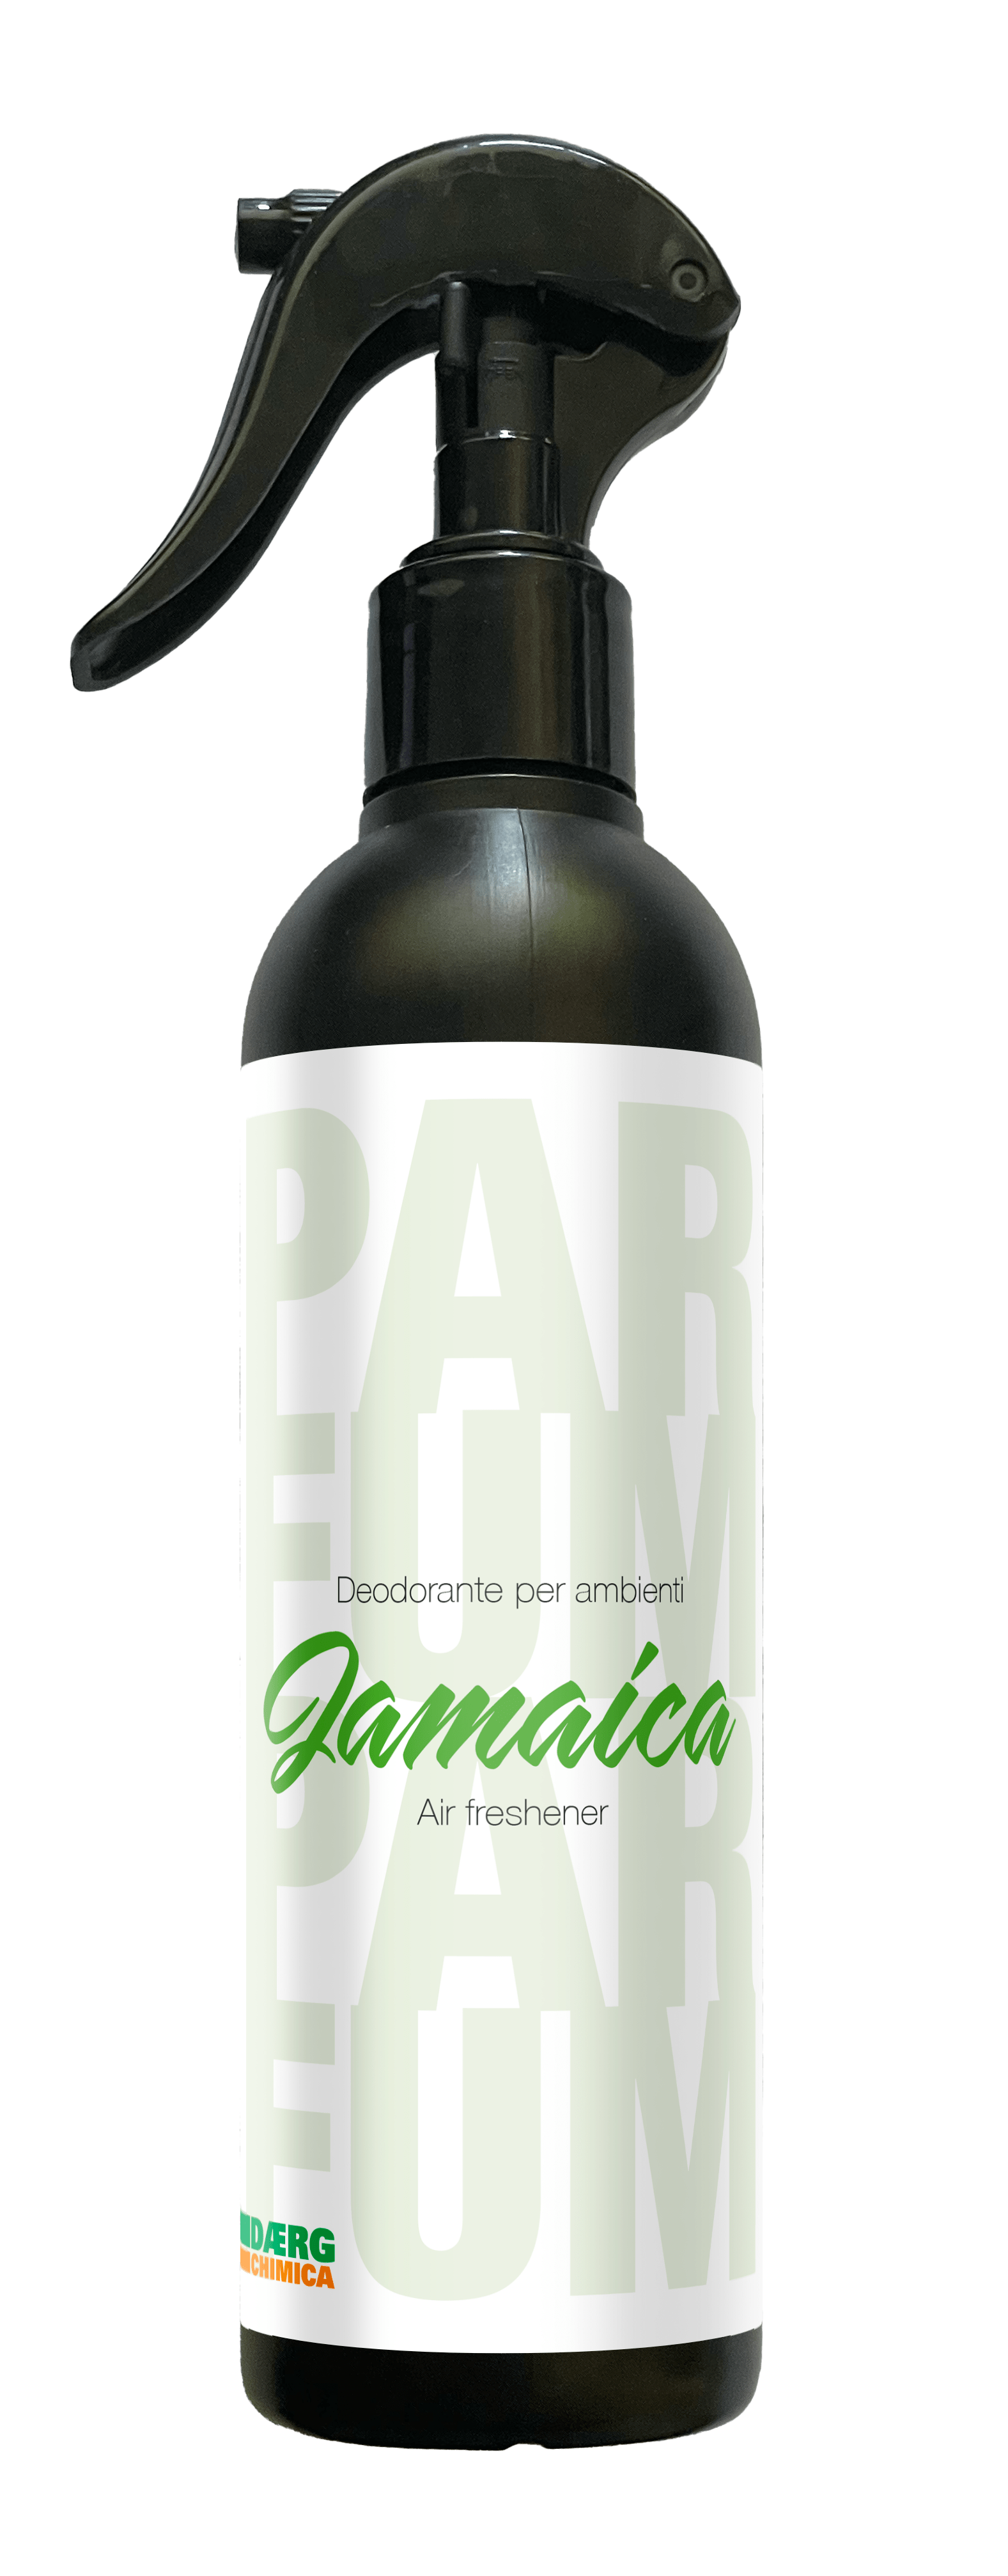 jamaica-deodorante-per-ambienti-daerg-chimica